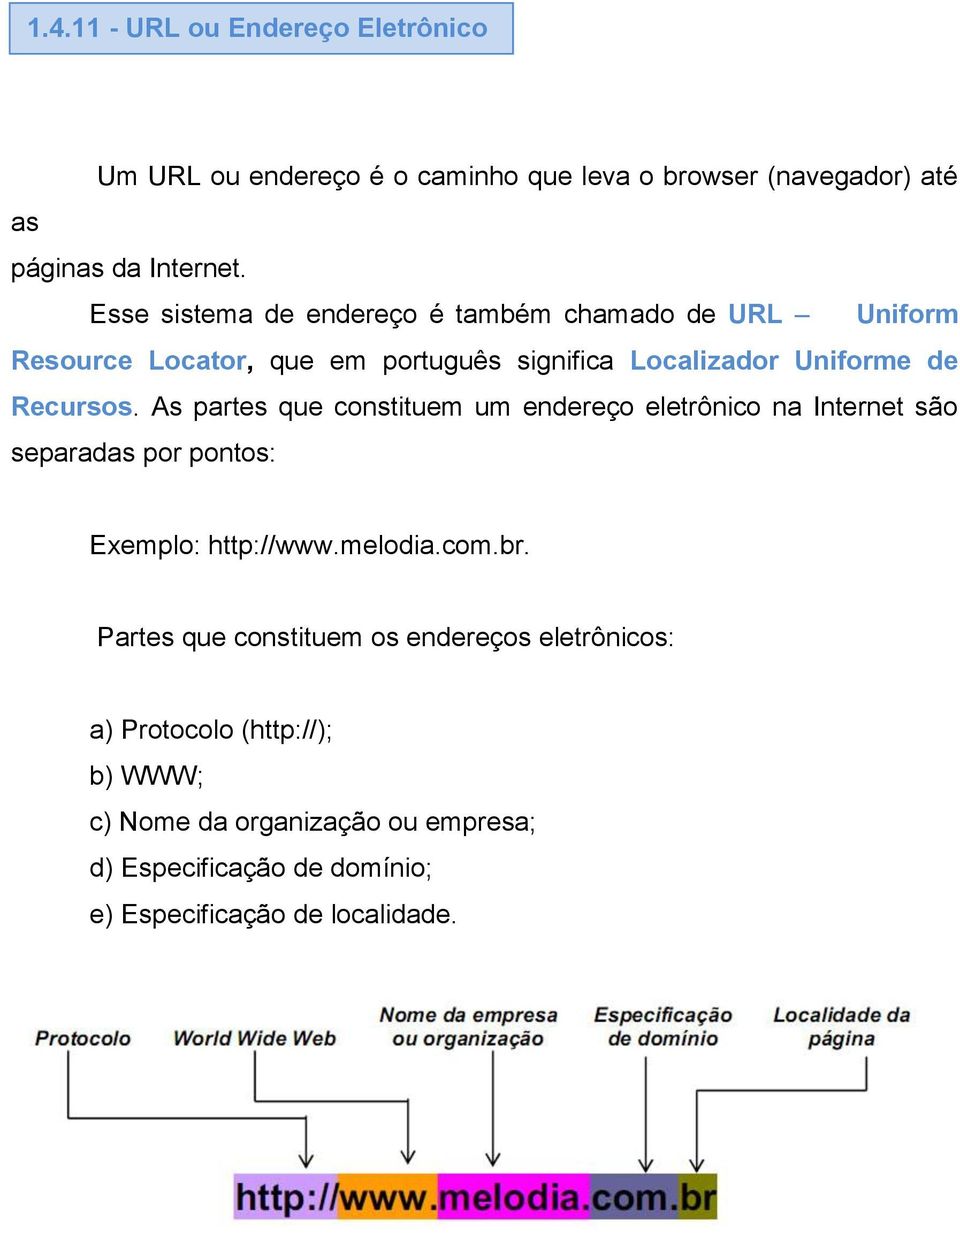 As partes que constituem um endereço eletrônico na Internet são separadas por pontos: Exemplo: http://www.melodia.com.br.